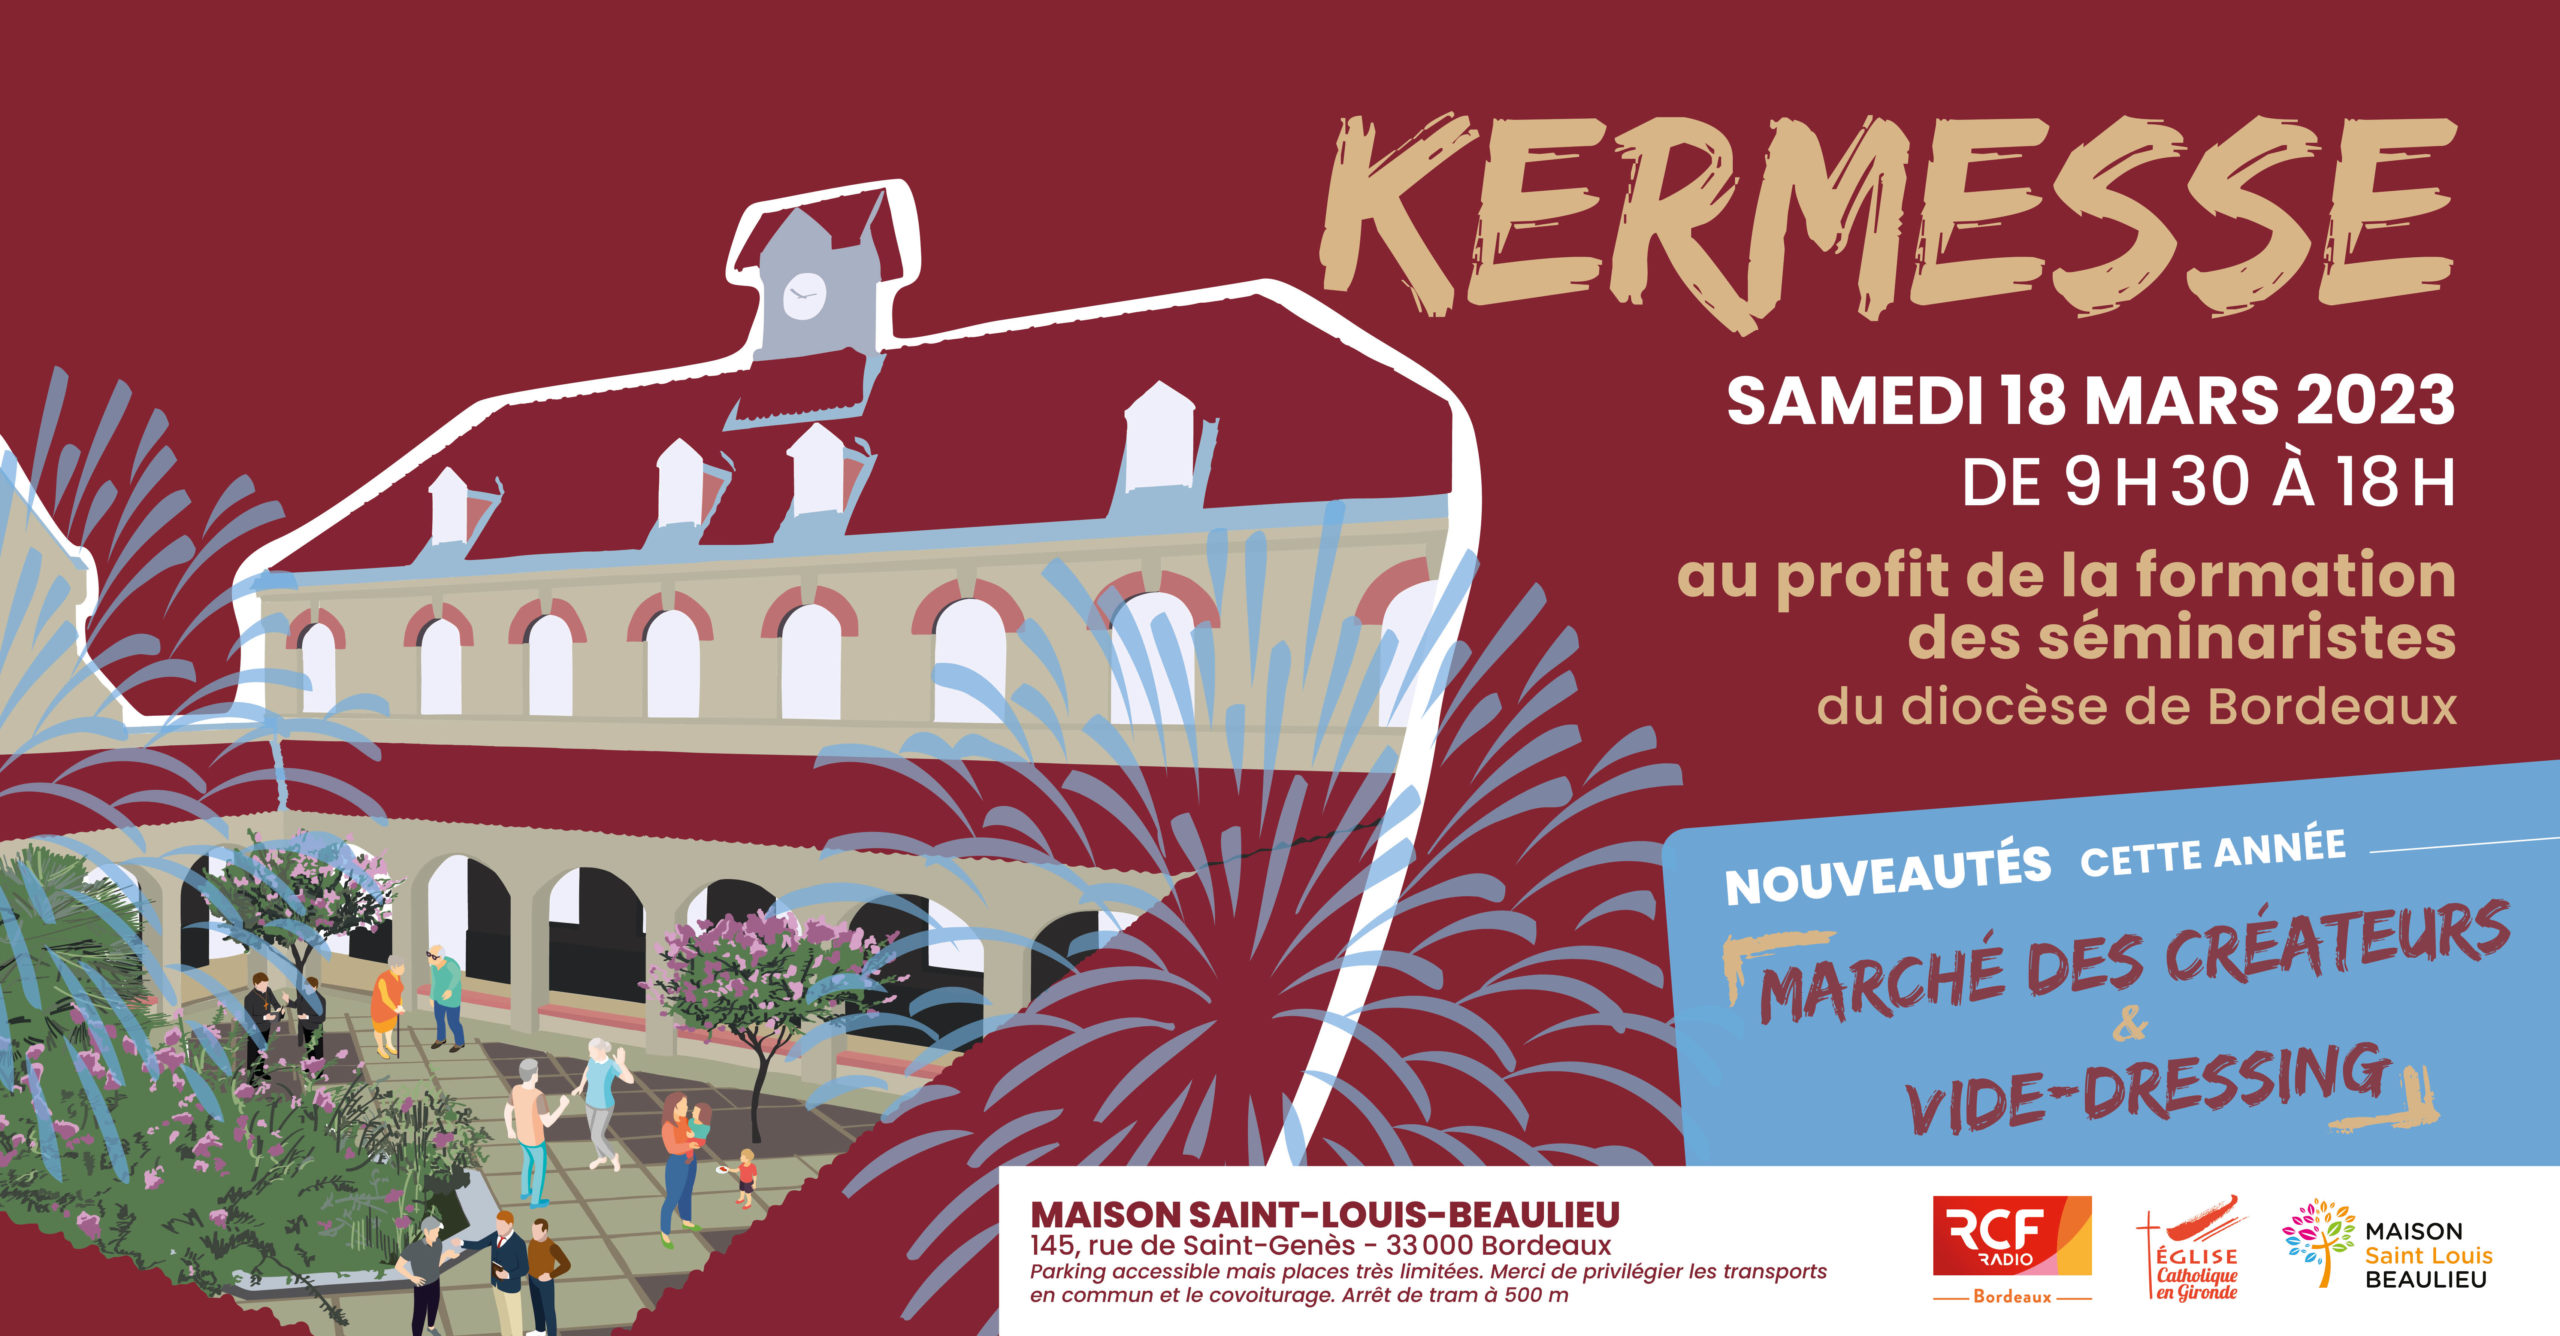 Kermesse au profit de la formation des séminaristes du diocèse de Bordeaux